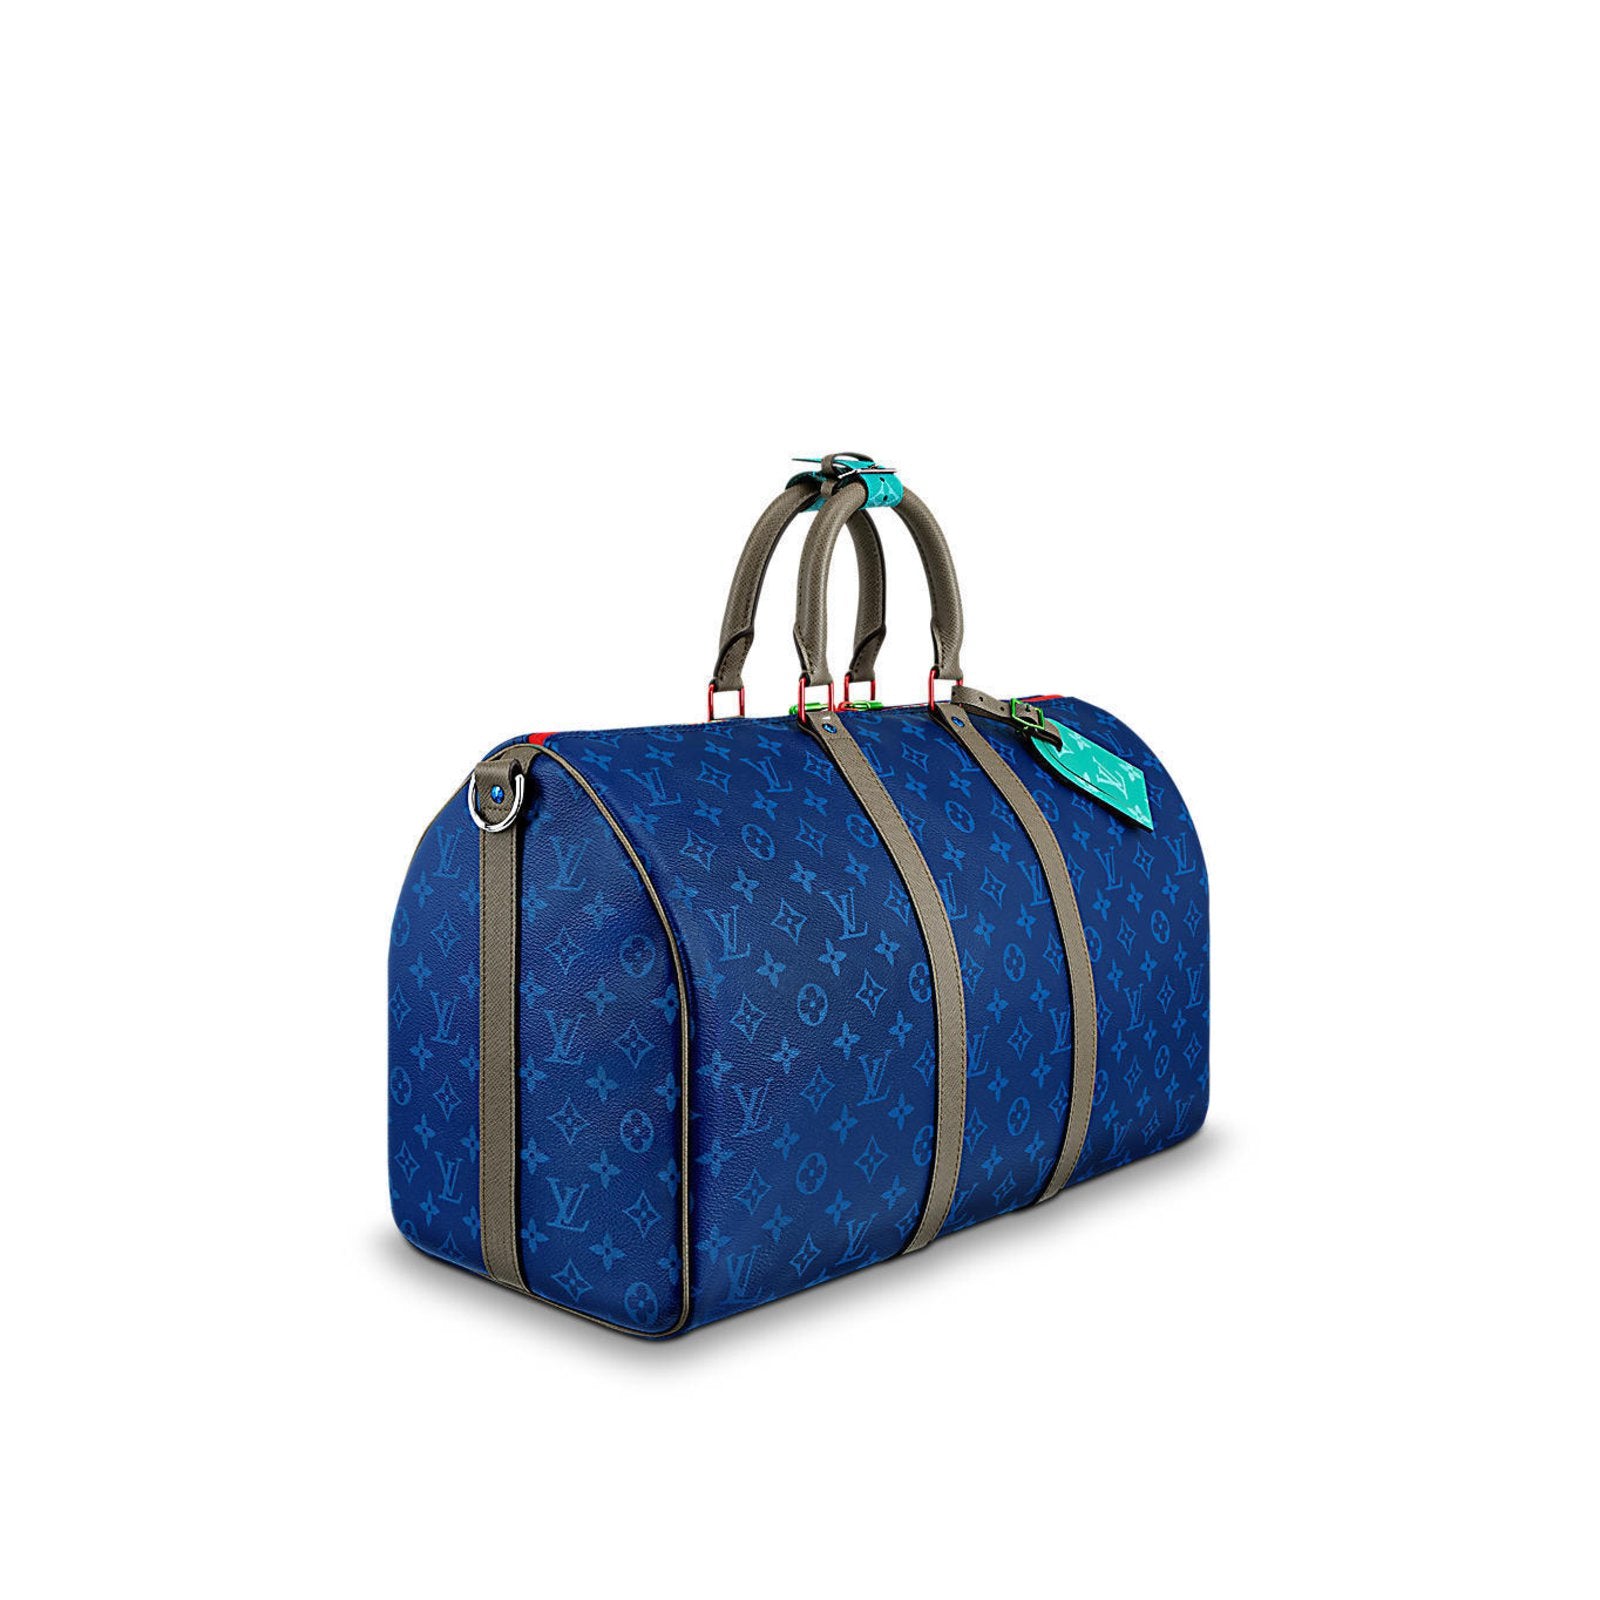 Blue on Blue Louis Vuitton Duffle Bag  Louis vuitton duffle bag, Bags, Louis  vuitton